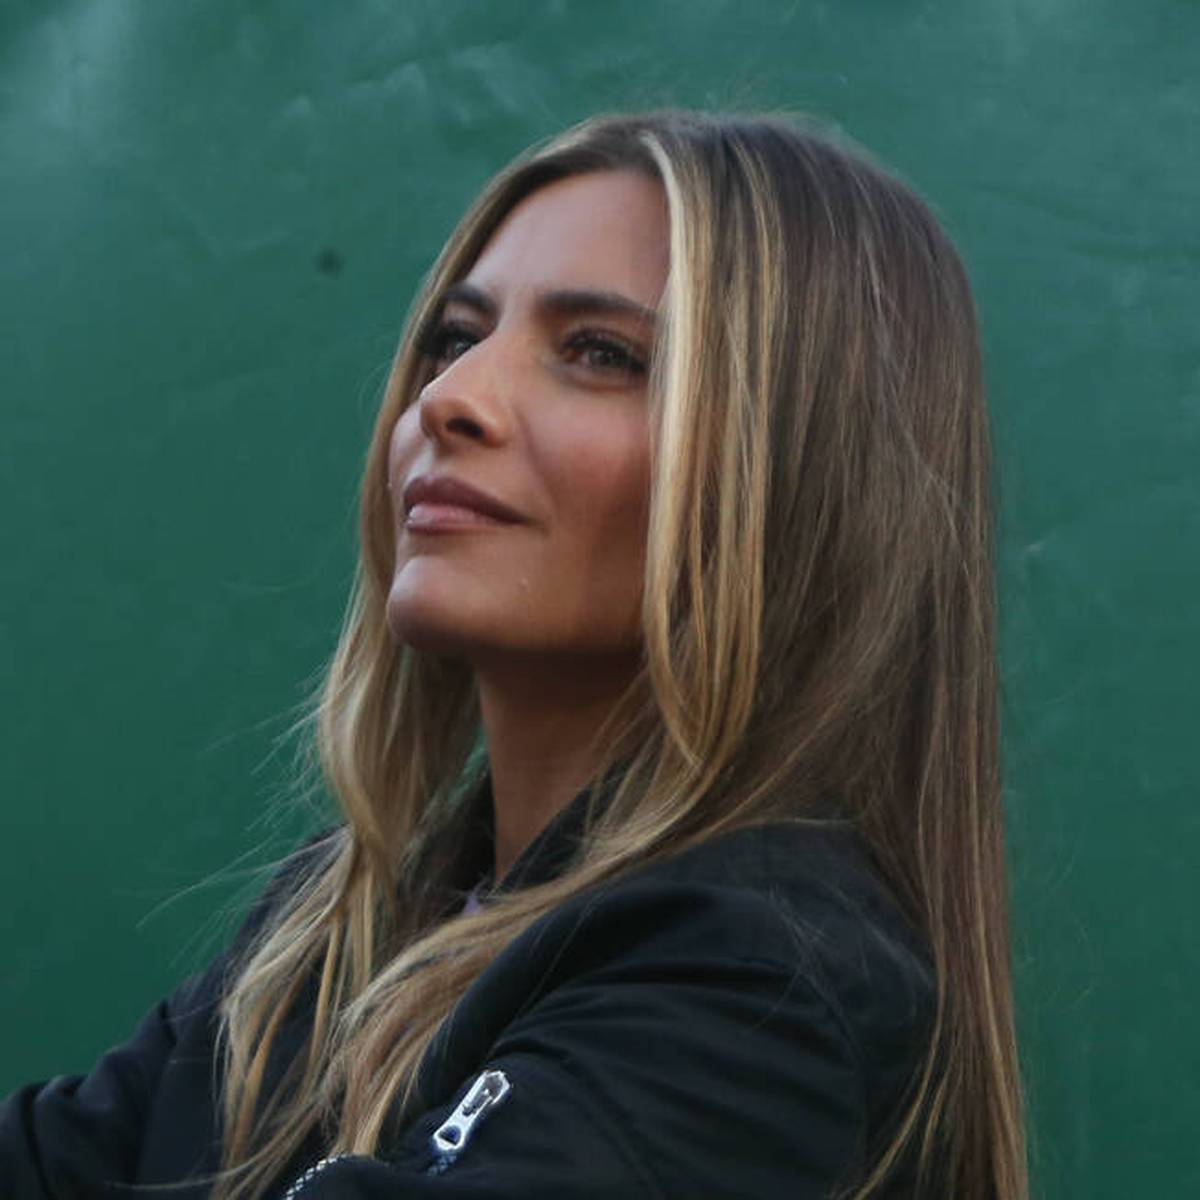 Sophia Thomalla ist von einem offenbar unheilbaren Gendefekt betroffen. Das macht die Freundin von Tennis-Star Alexander Zverev bei Instagram öffentlich.